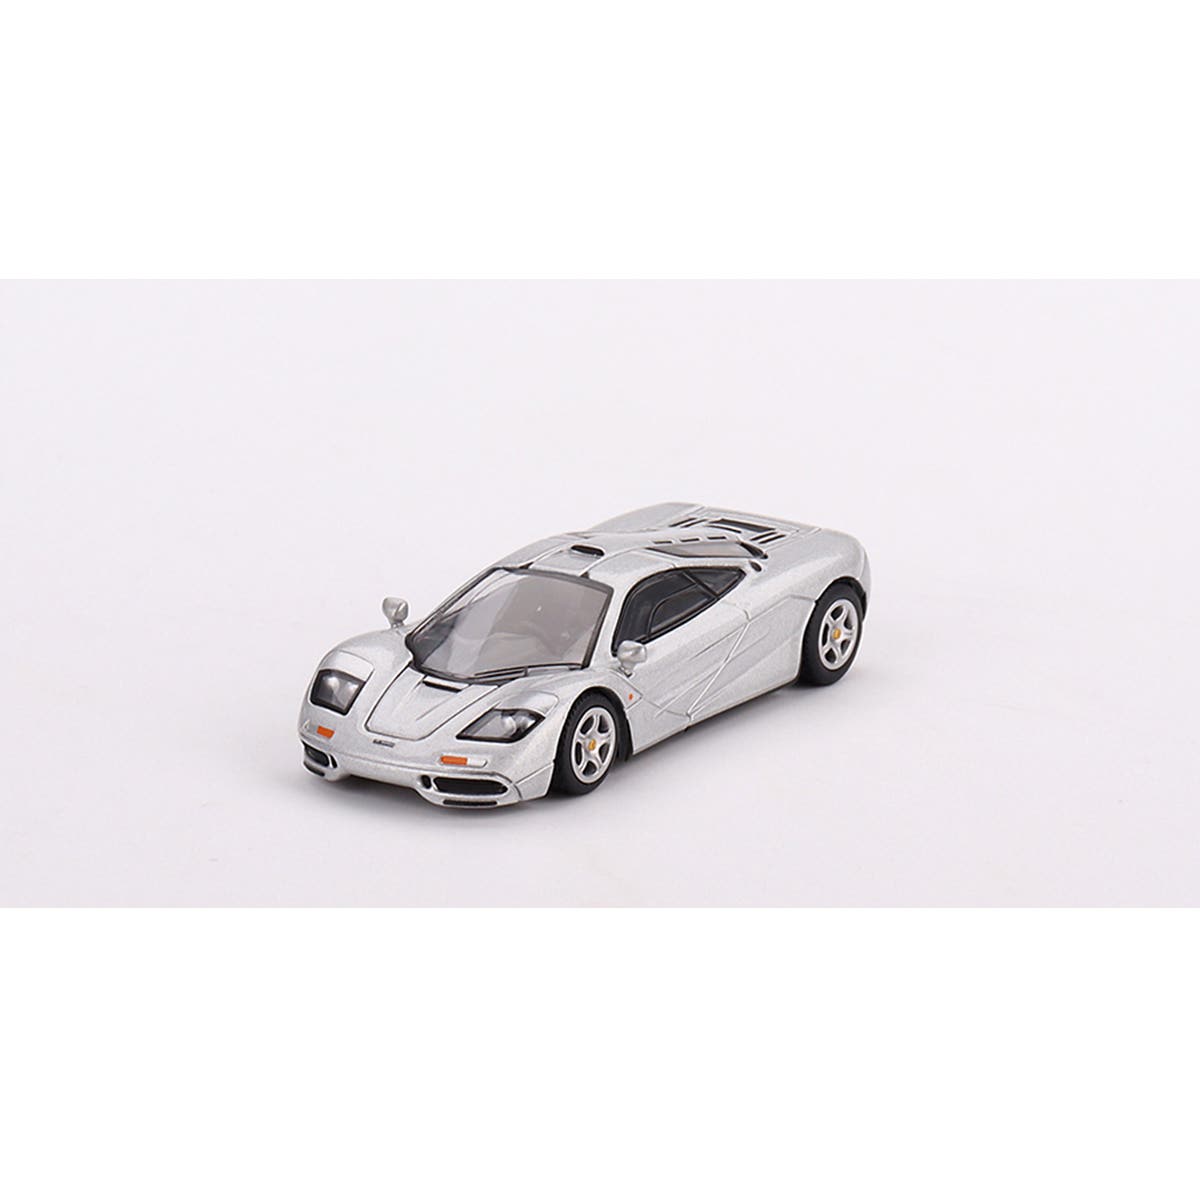 McLaren F1 Magnesium Silver - 1:64 Scale Diecast Model Car